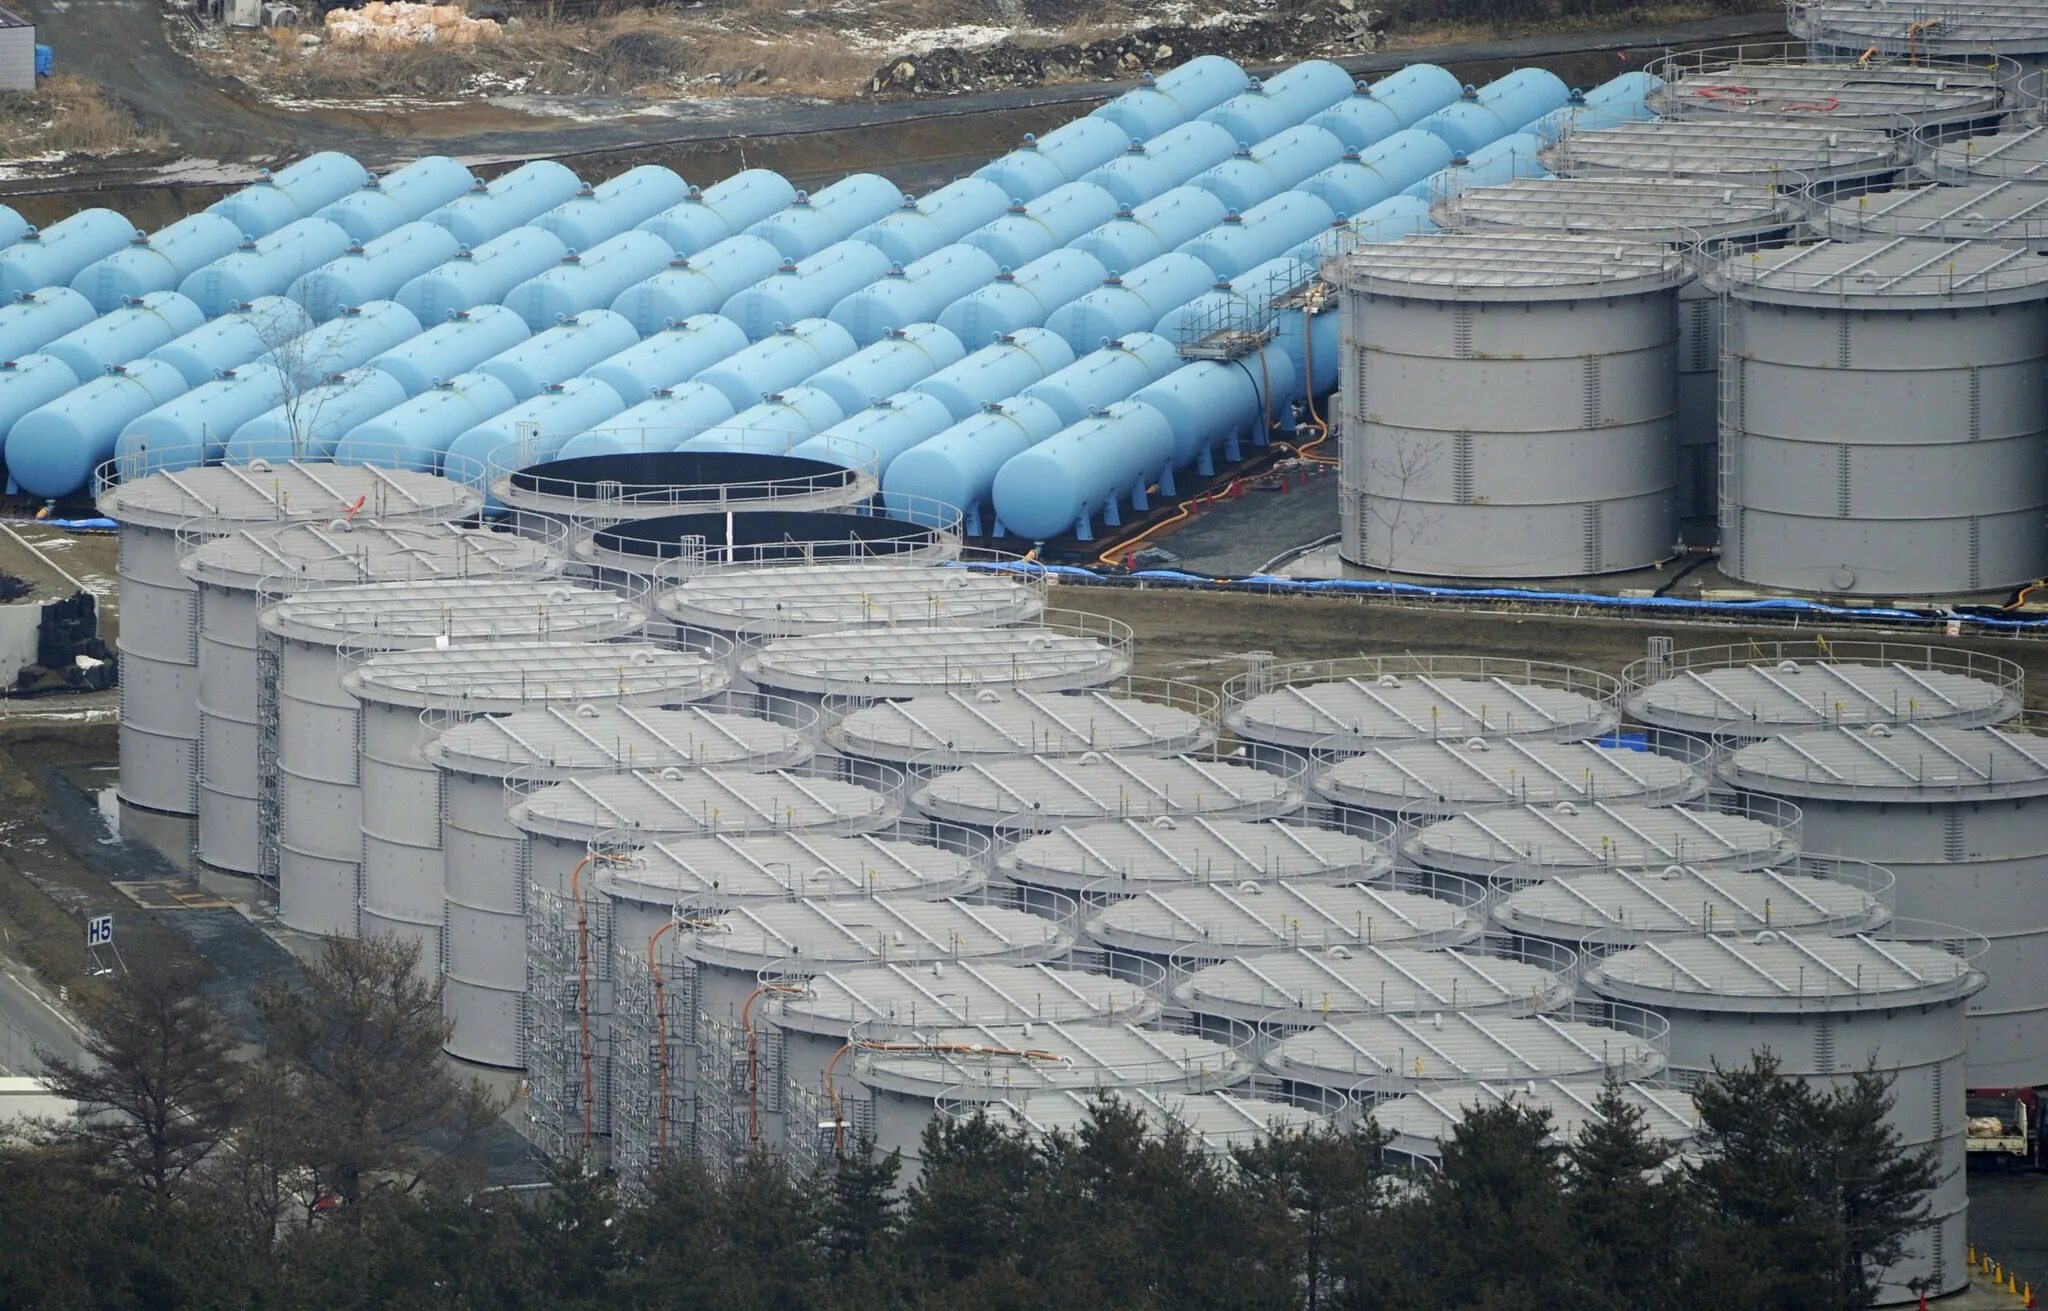 Радиоактивные отходы аэс. Фукусима Даини II. Хранилище воды. Хранилище радиоактивных отходов. Бочки с водой на Фукусиме.